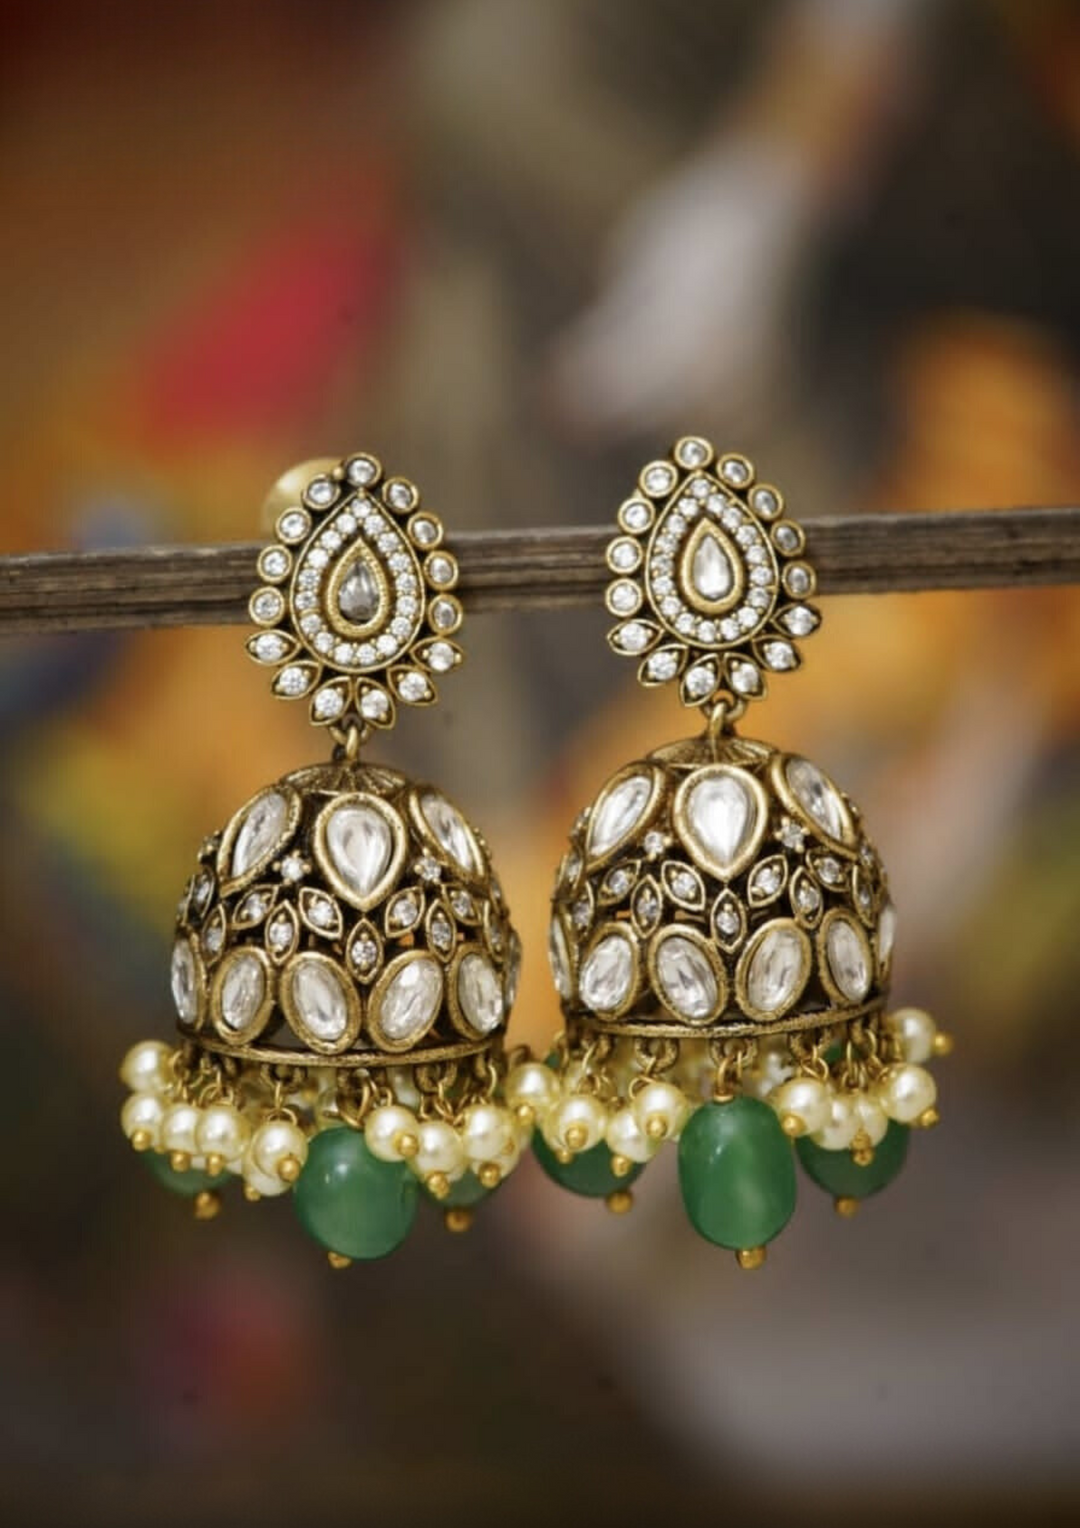 Victorian jewellery earrings Styleno175